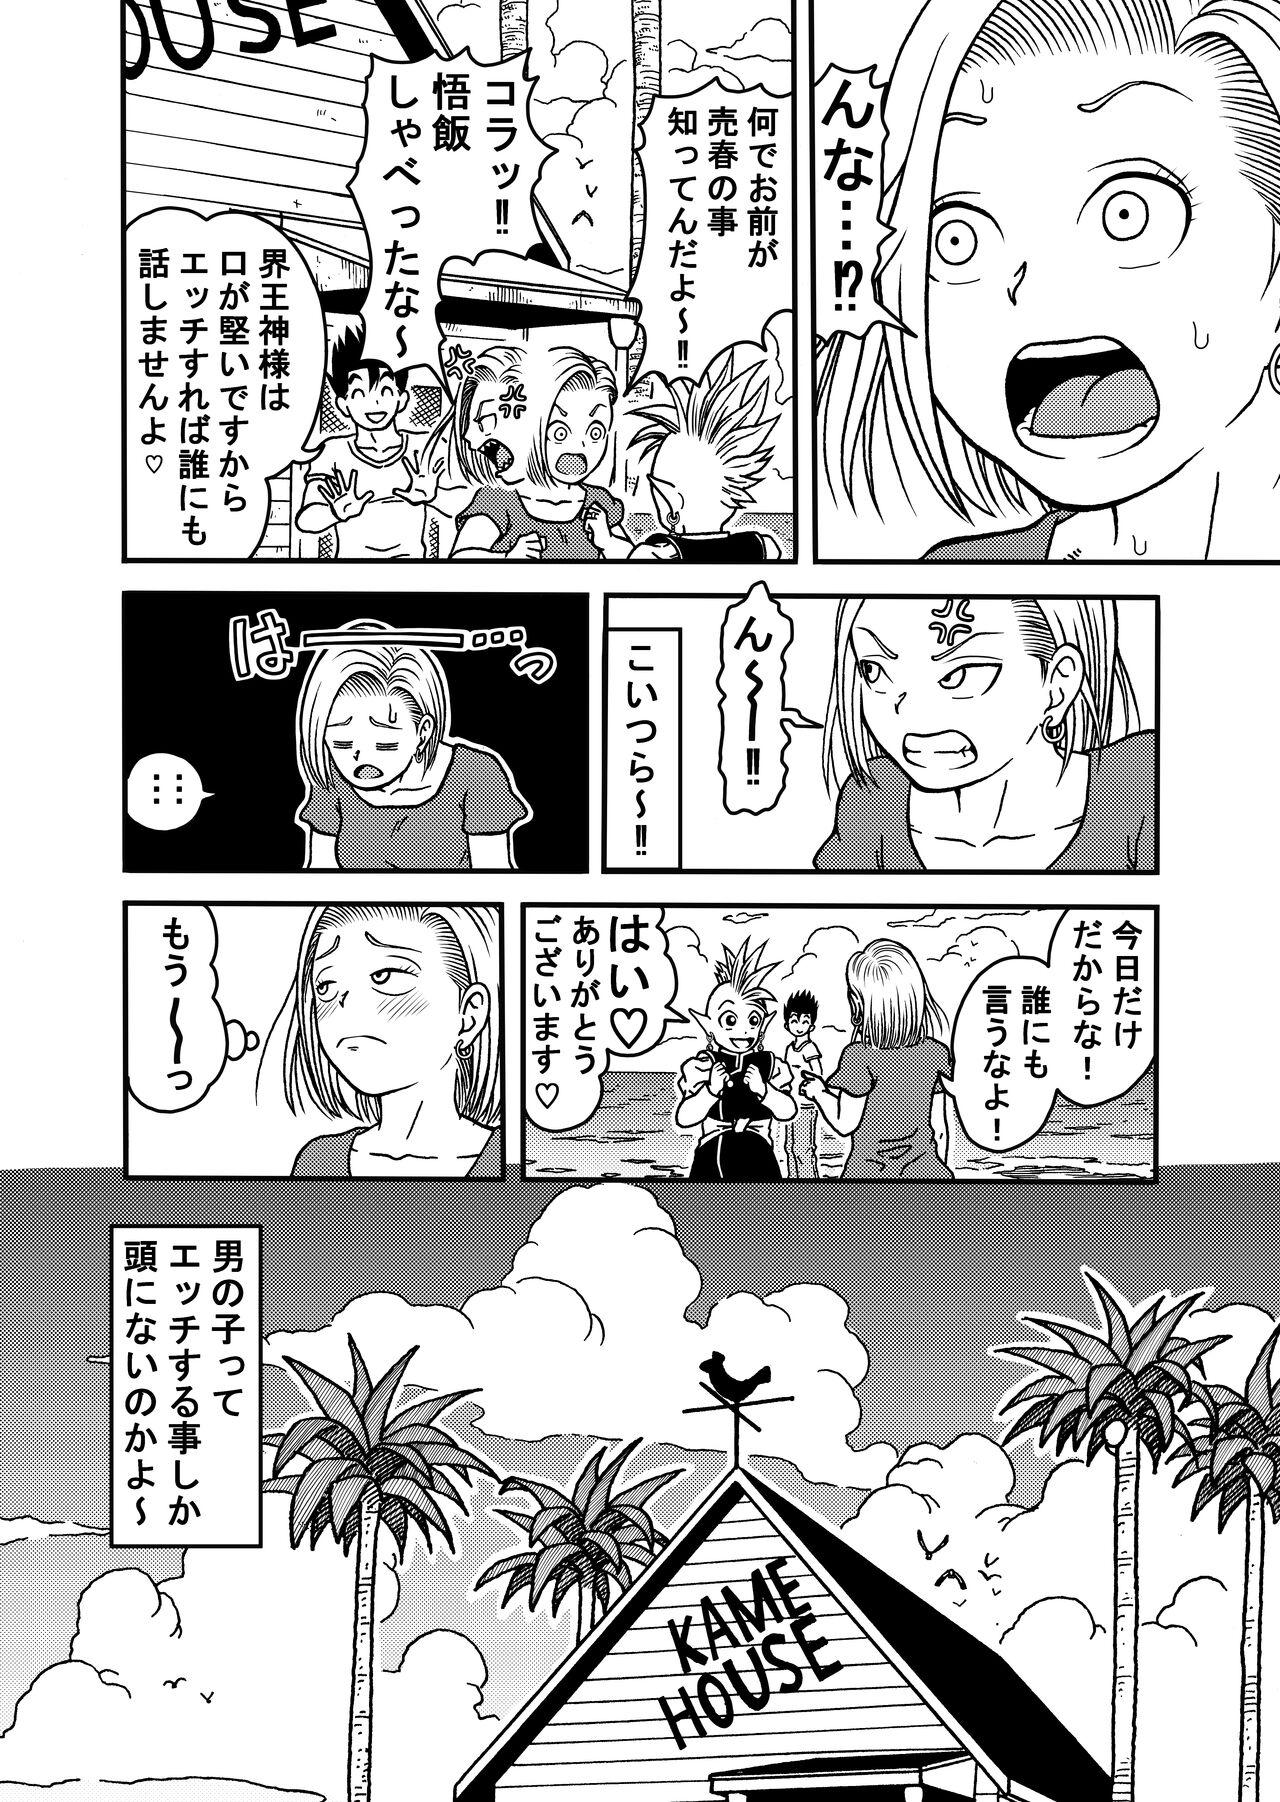 Chunky 18-gou NTR Nakadashi on Parade 5 - Dragon ball z Gay Medic - Page 10